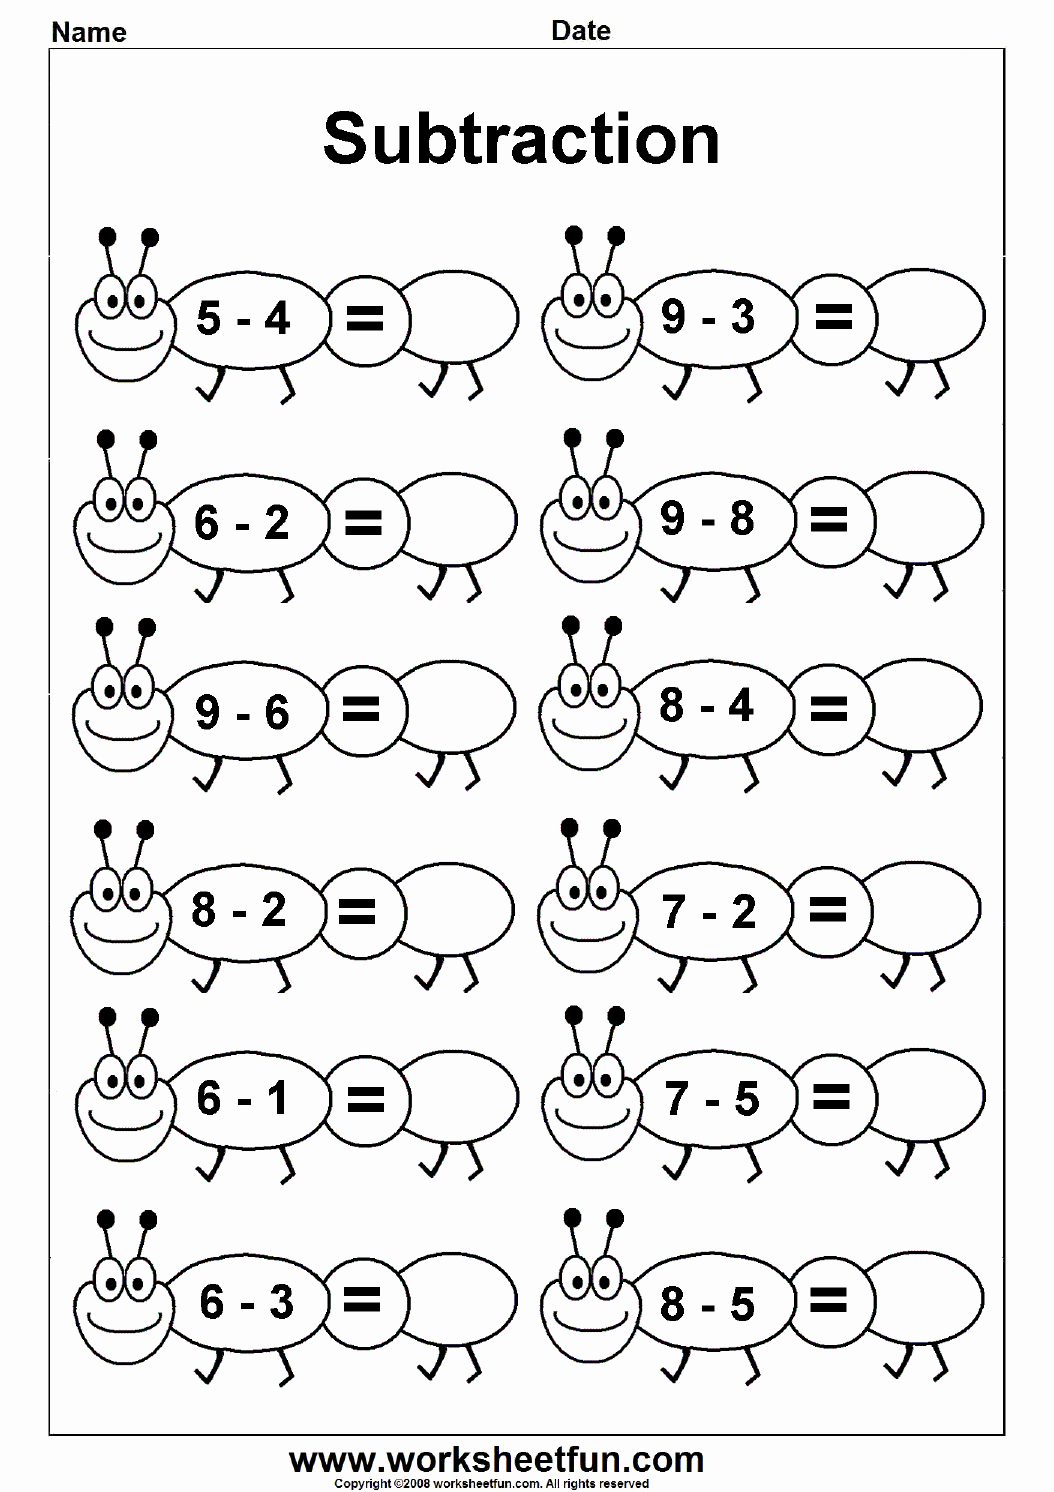 Subtraction Worksheet for Kindergarten Awesome Subtraction – 4 Kindergarten Subtraction Worksheets Free